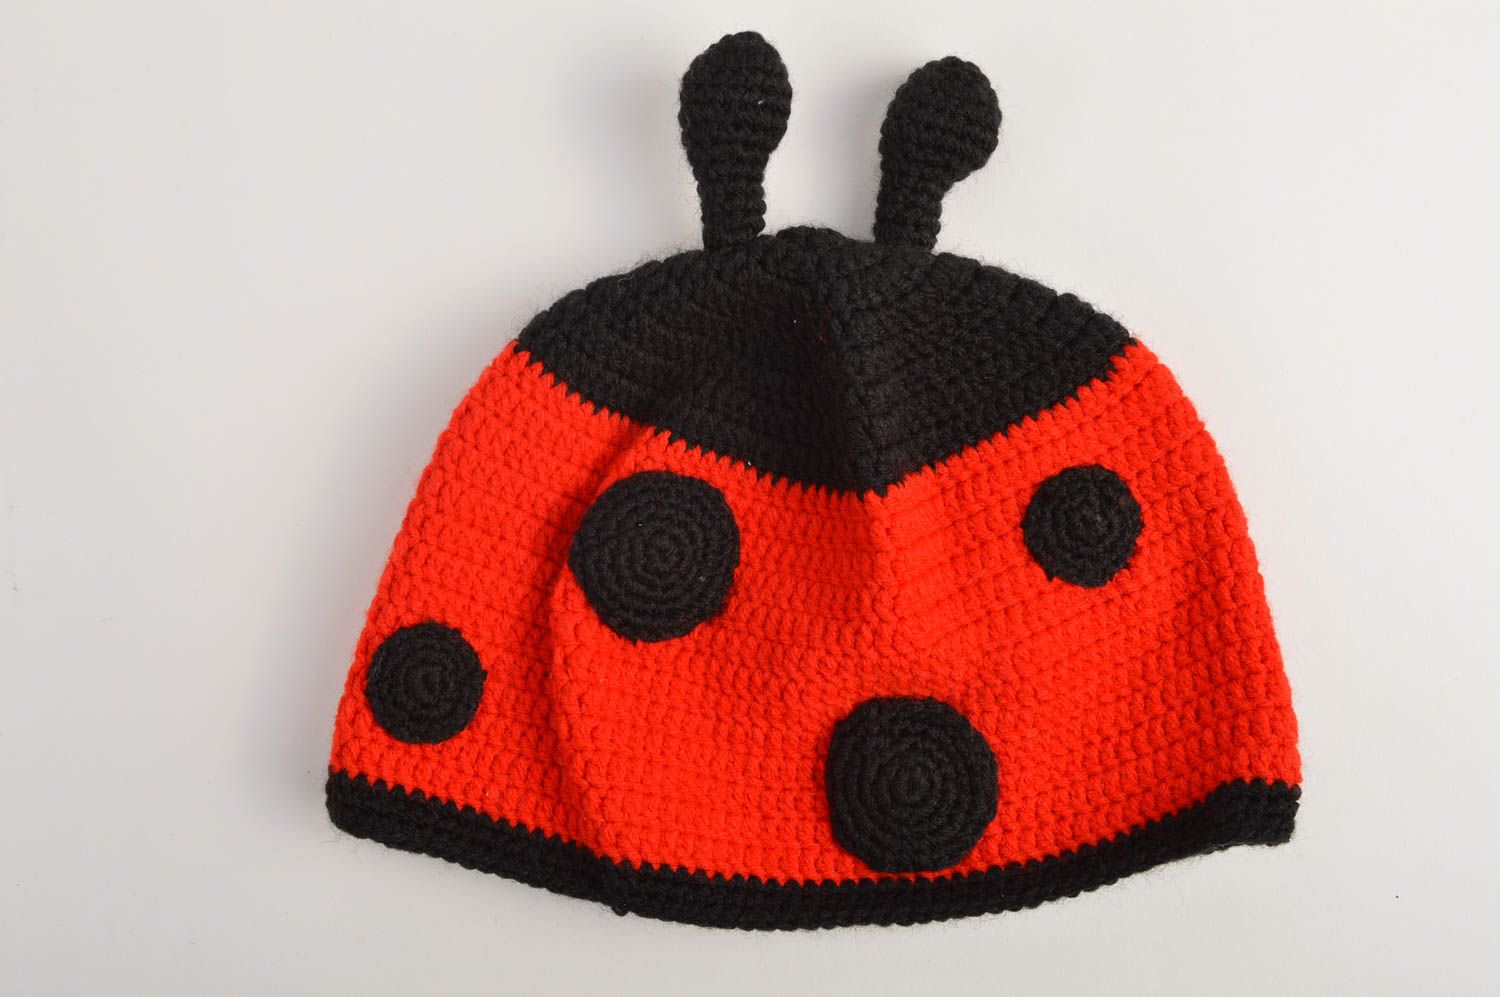 Cute handmade crochet hat baby hat designs crochet ideas warm winter hat photo 3